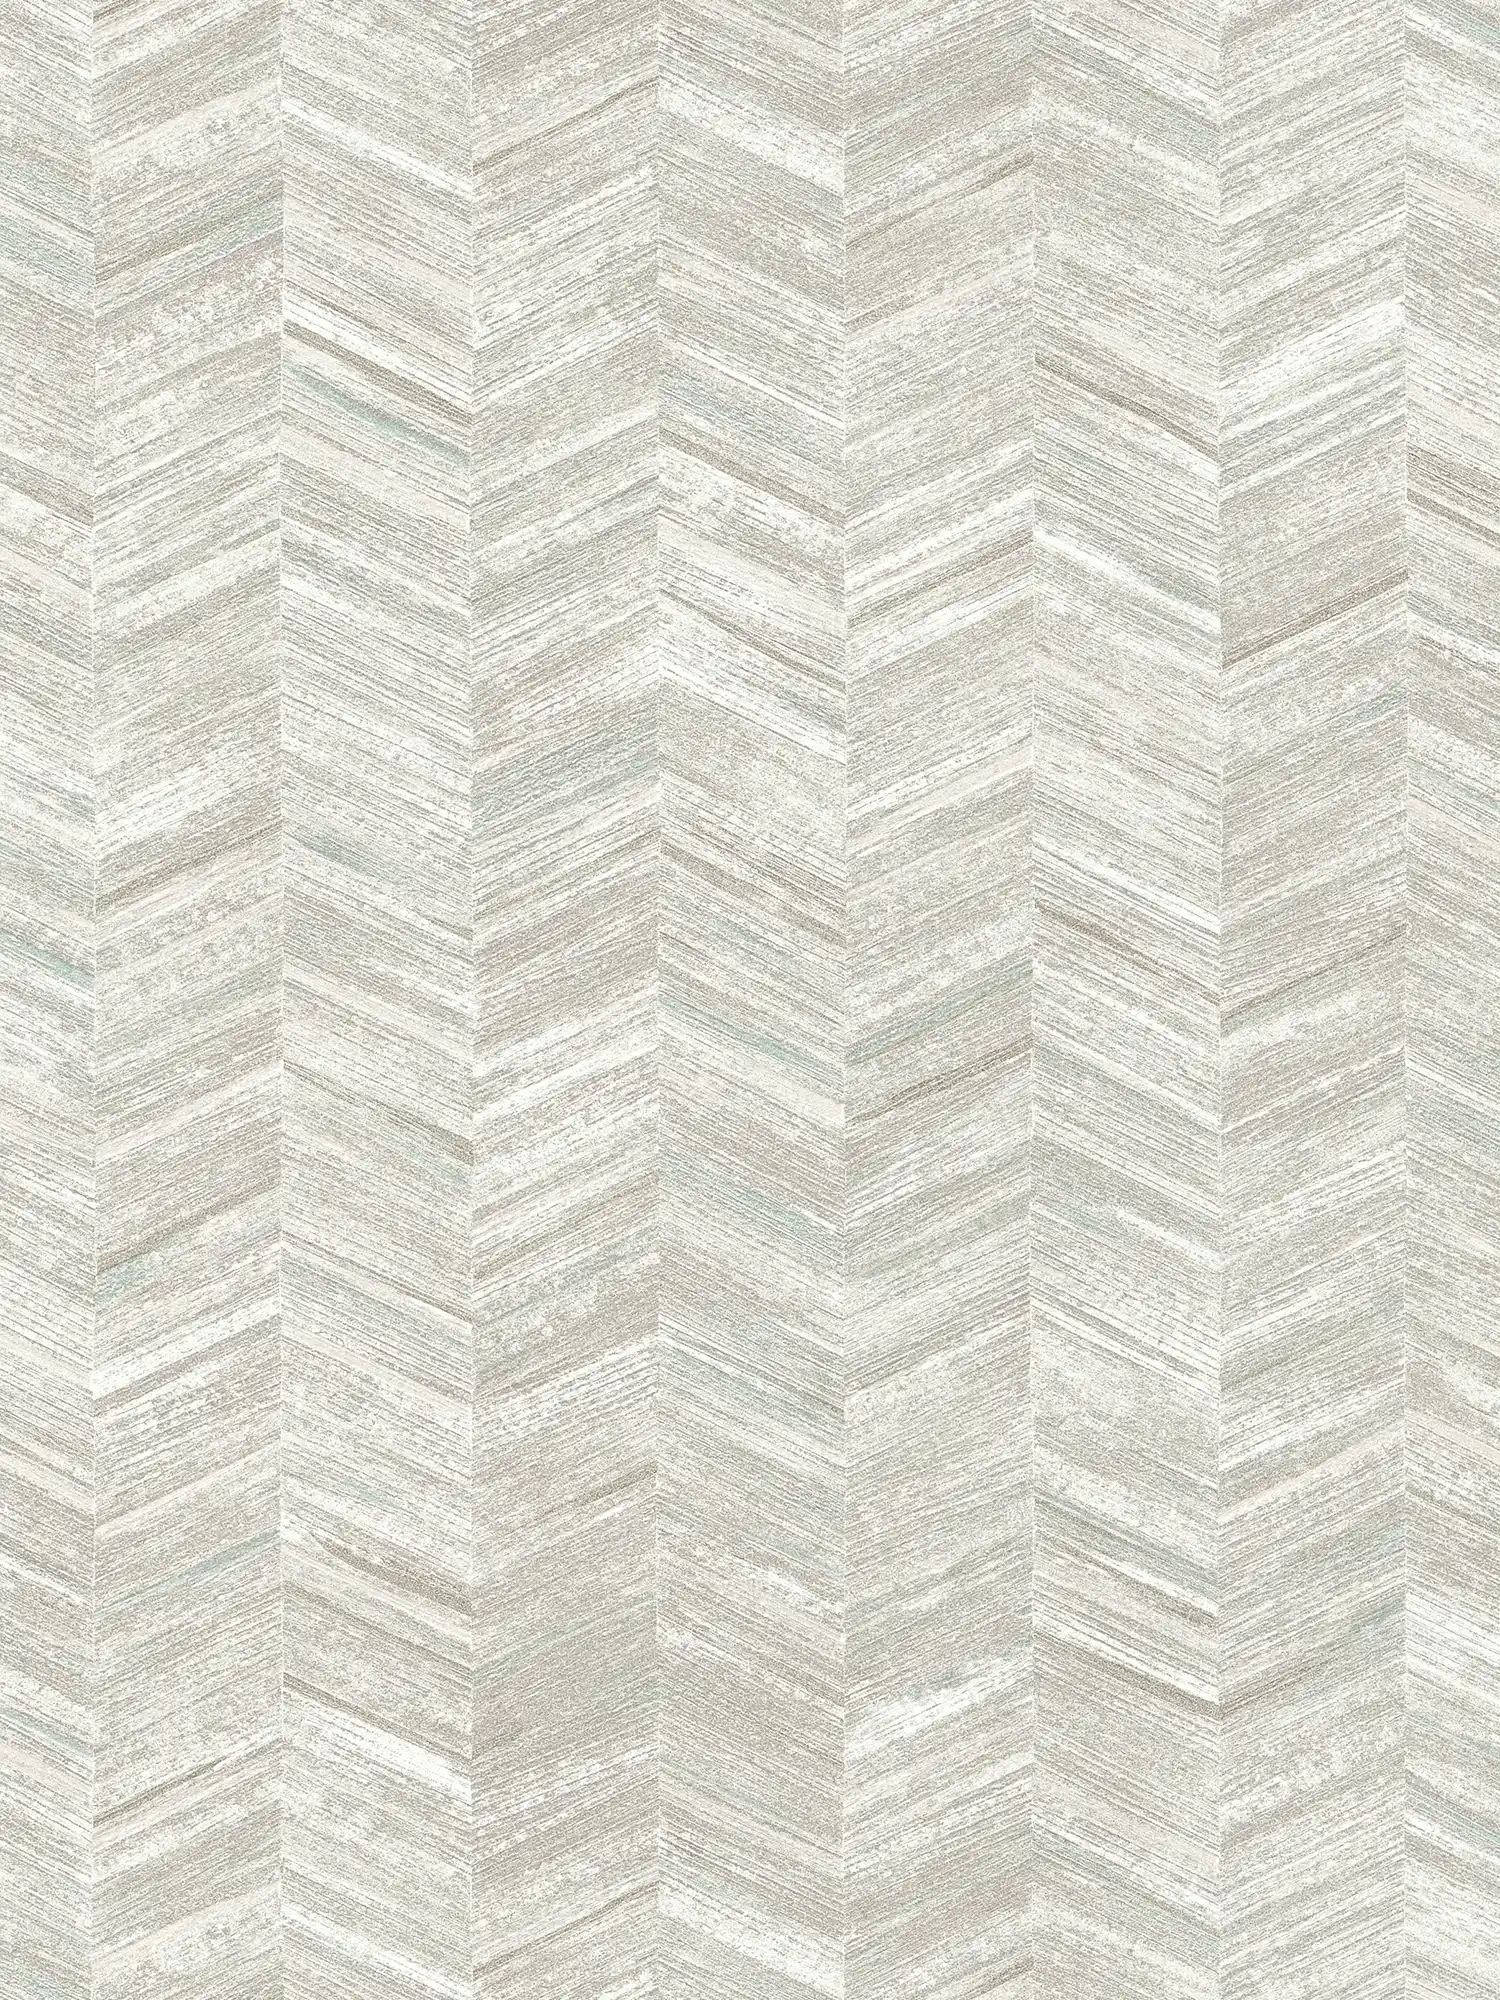 papel pintado texturizado no tejido con efecto madera y diseño en espiga - gris, blanco
